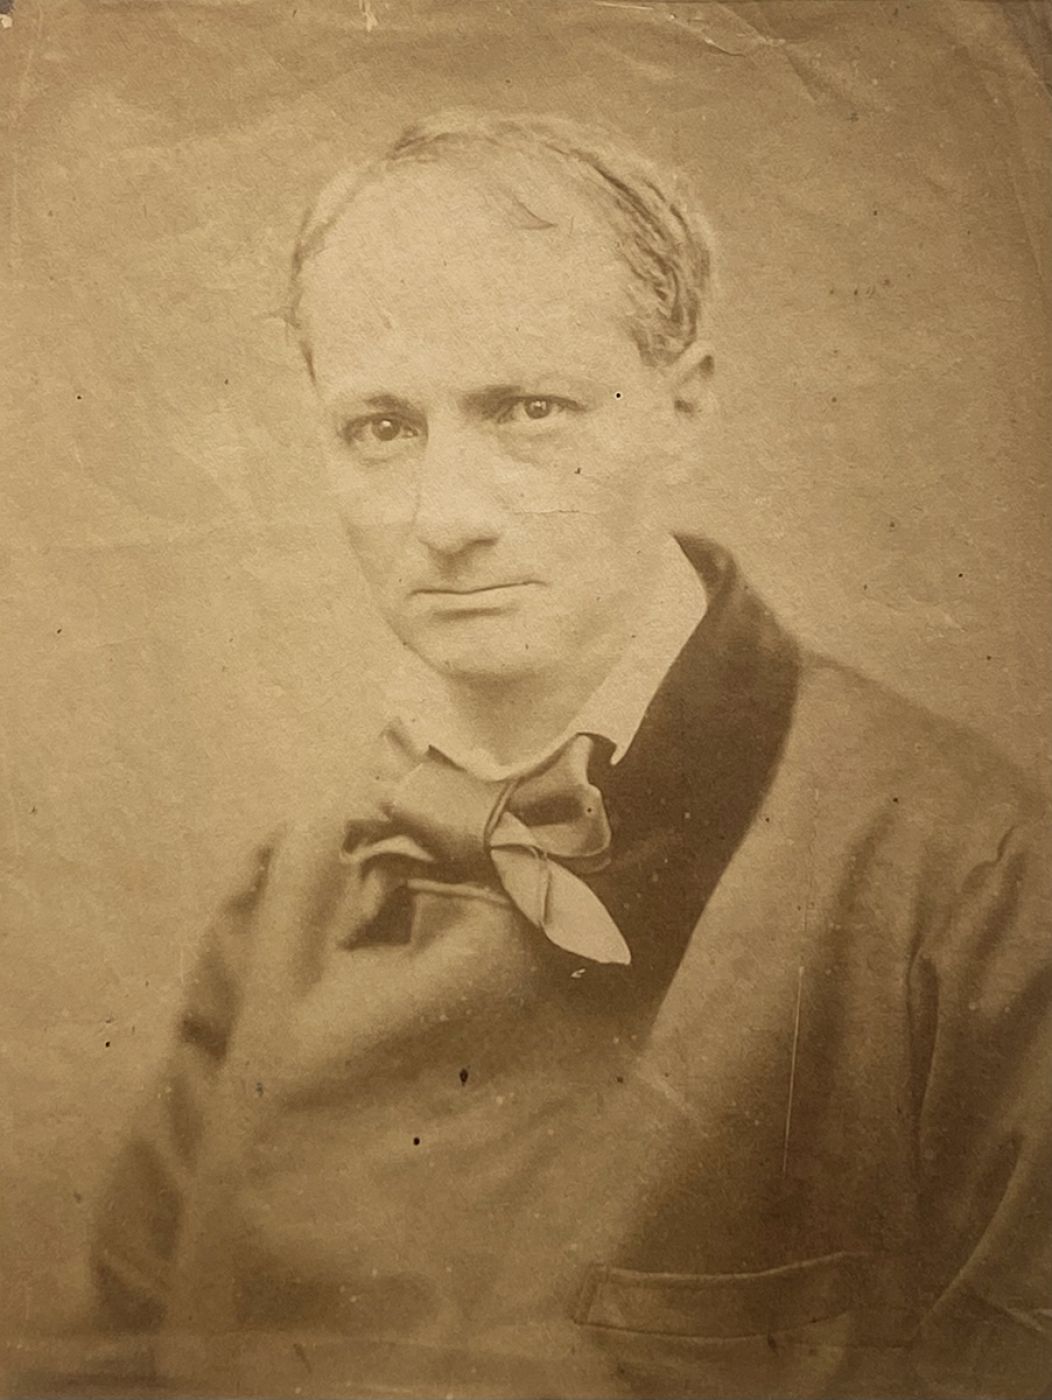 Etienne Carjat, “Charles Baudelaire”, 1861